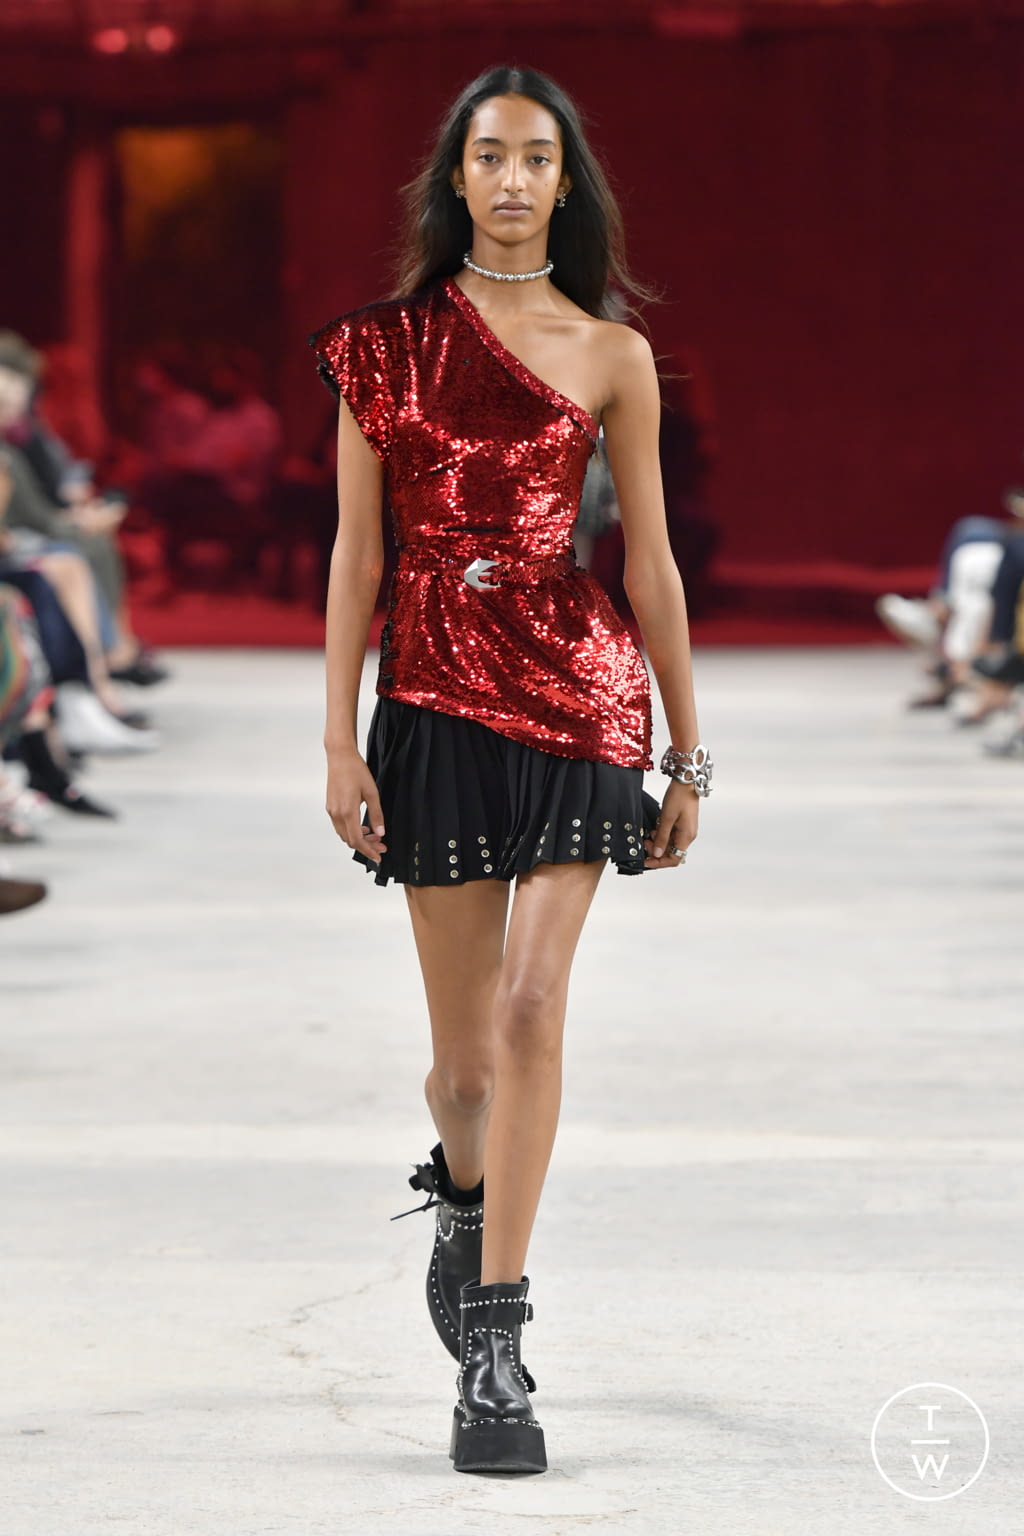 Louis Vuitton SS22 menswear #37 - Tagwalk: The Fashion Search Engine